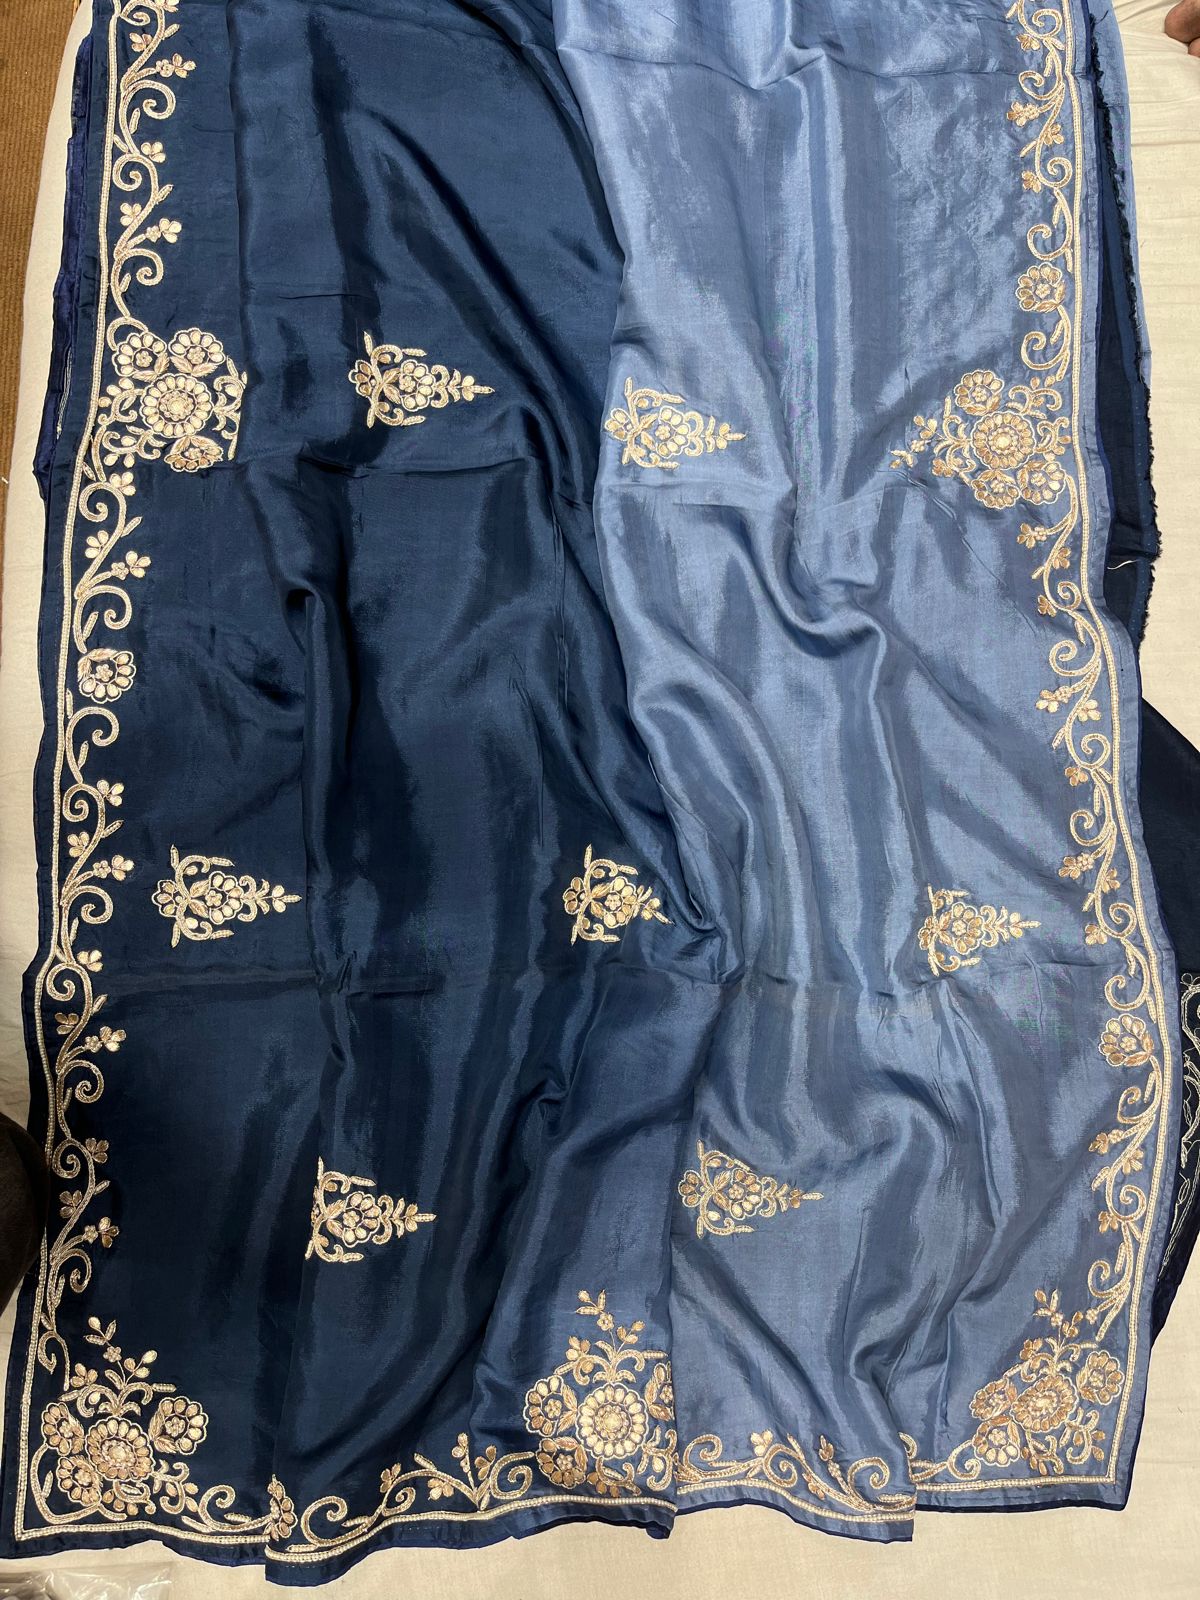 Handloom silk gottapatti saree